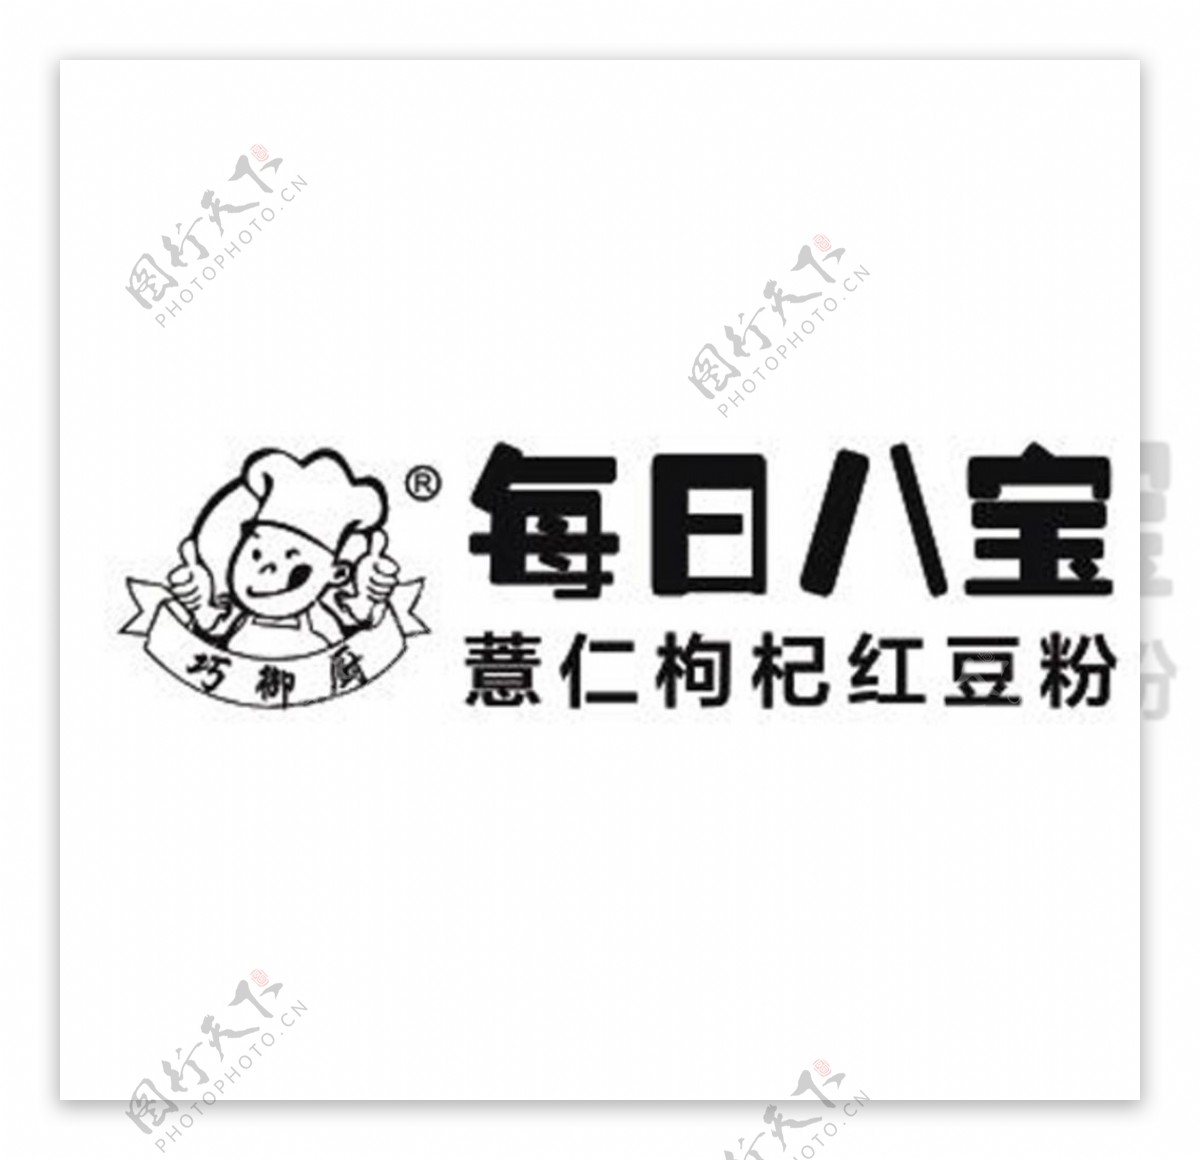 俏御厨logo